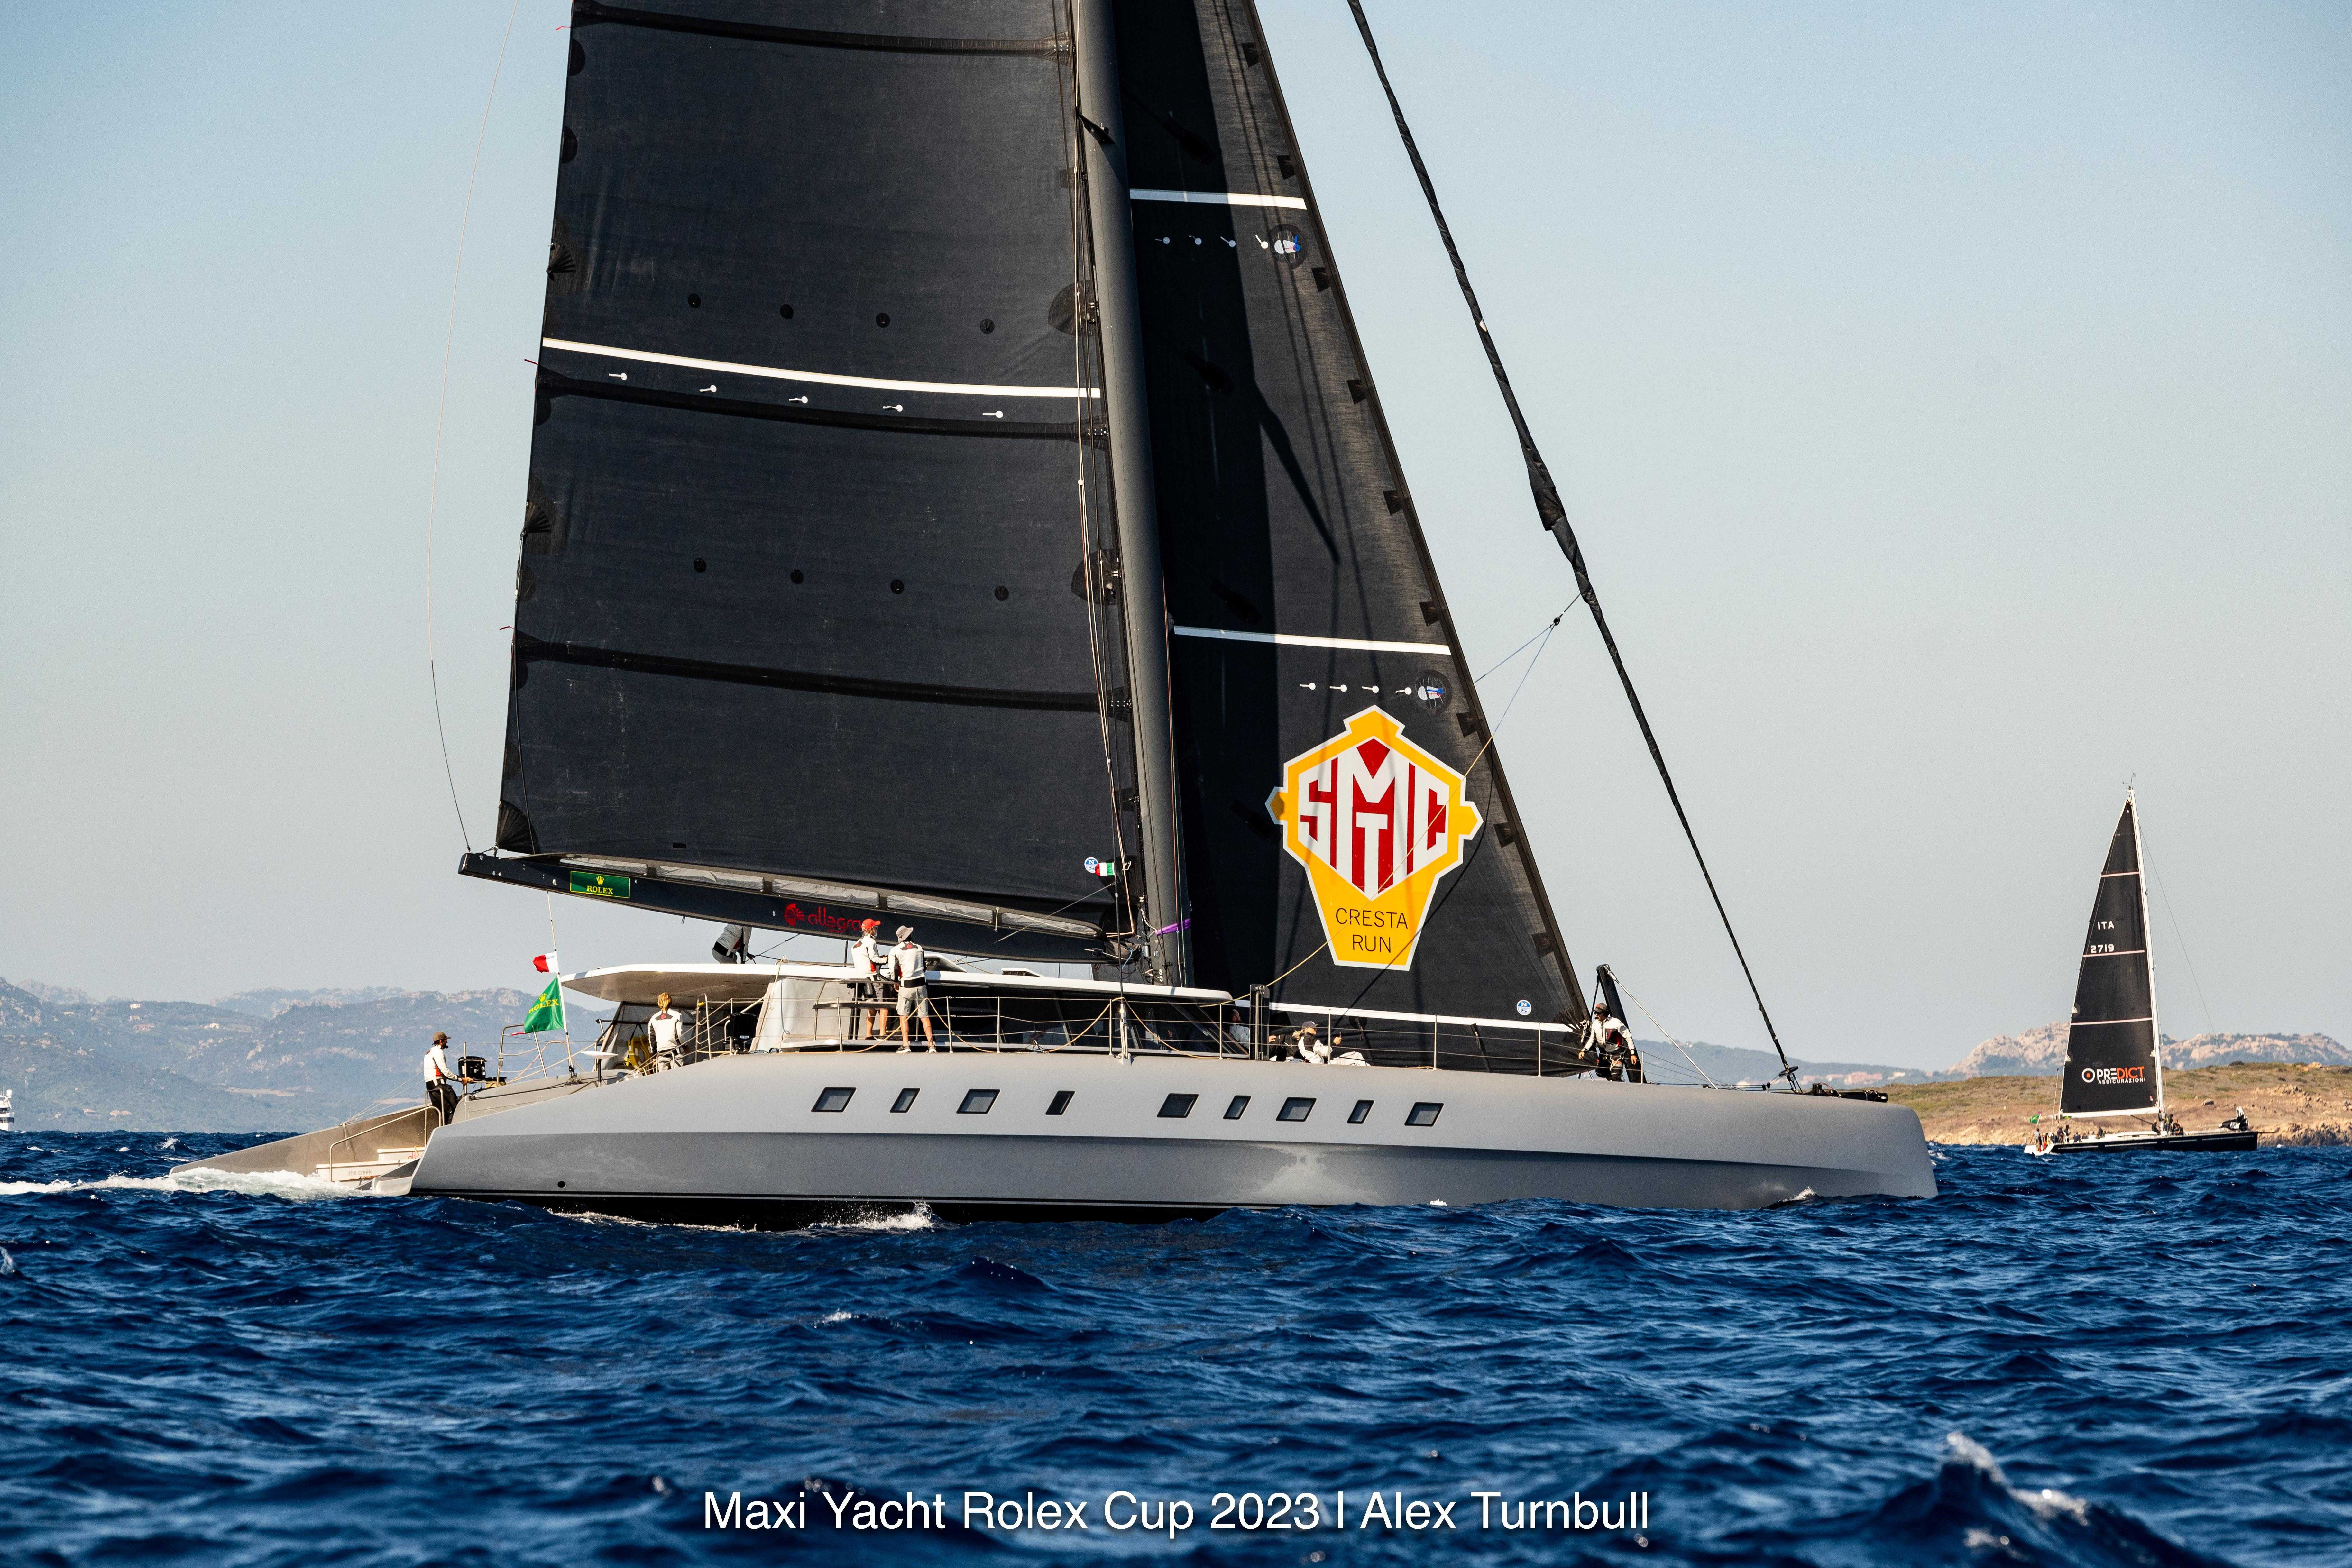 Allegra (Custom) of Adrian Keller - Maxi Yacht Rolex Cup 2023 © Alex Turnbull